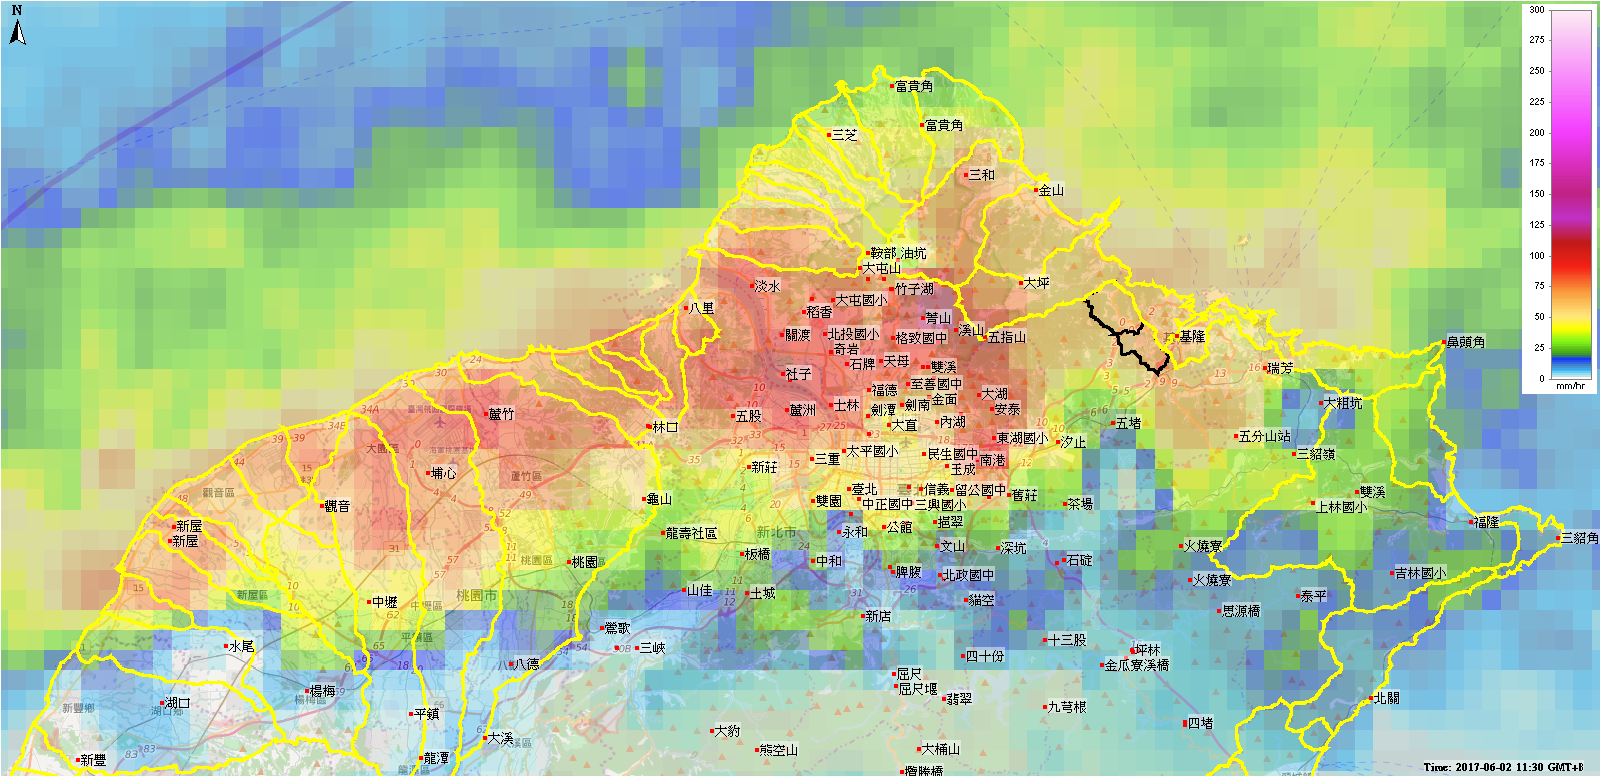 圖1雷達觀測降雨空間分布2017-06-02豪雨事件